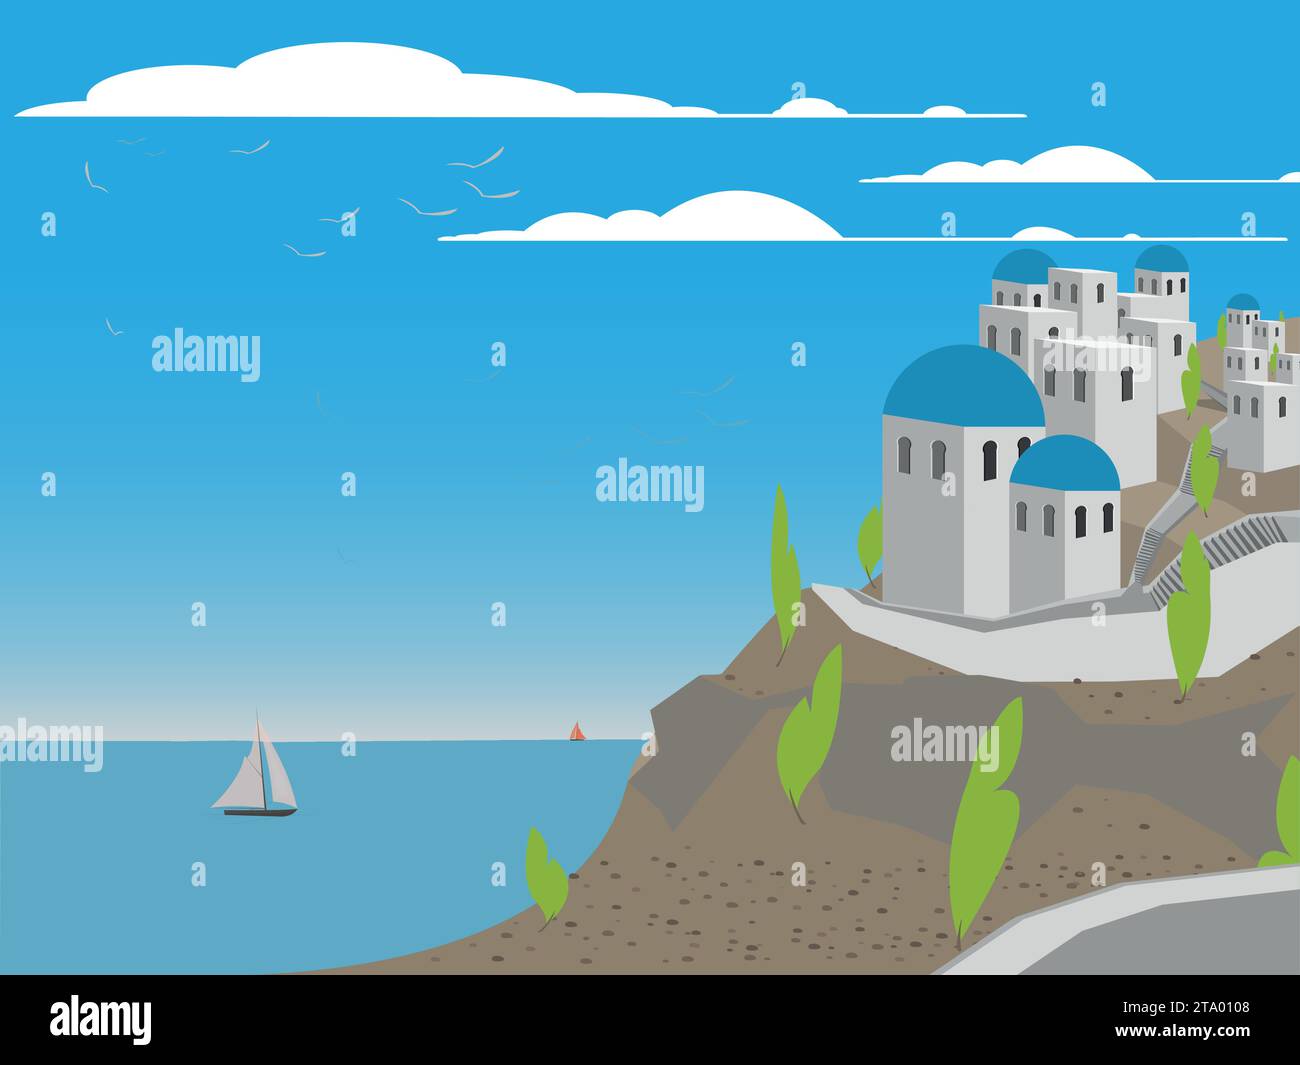 Reise-Ikone Ort griechische Insel Santorin mit Meer und Segelbooten. Vektorabbildung Stock Vektor